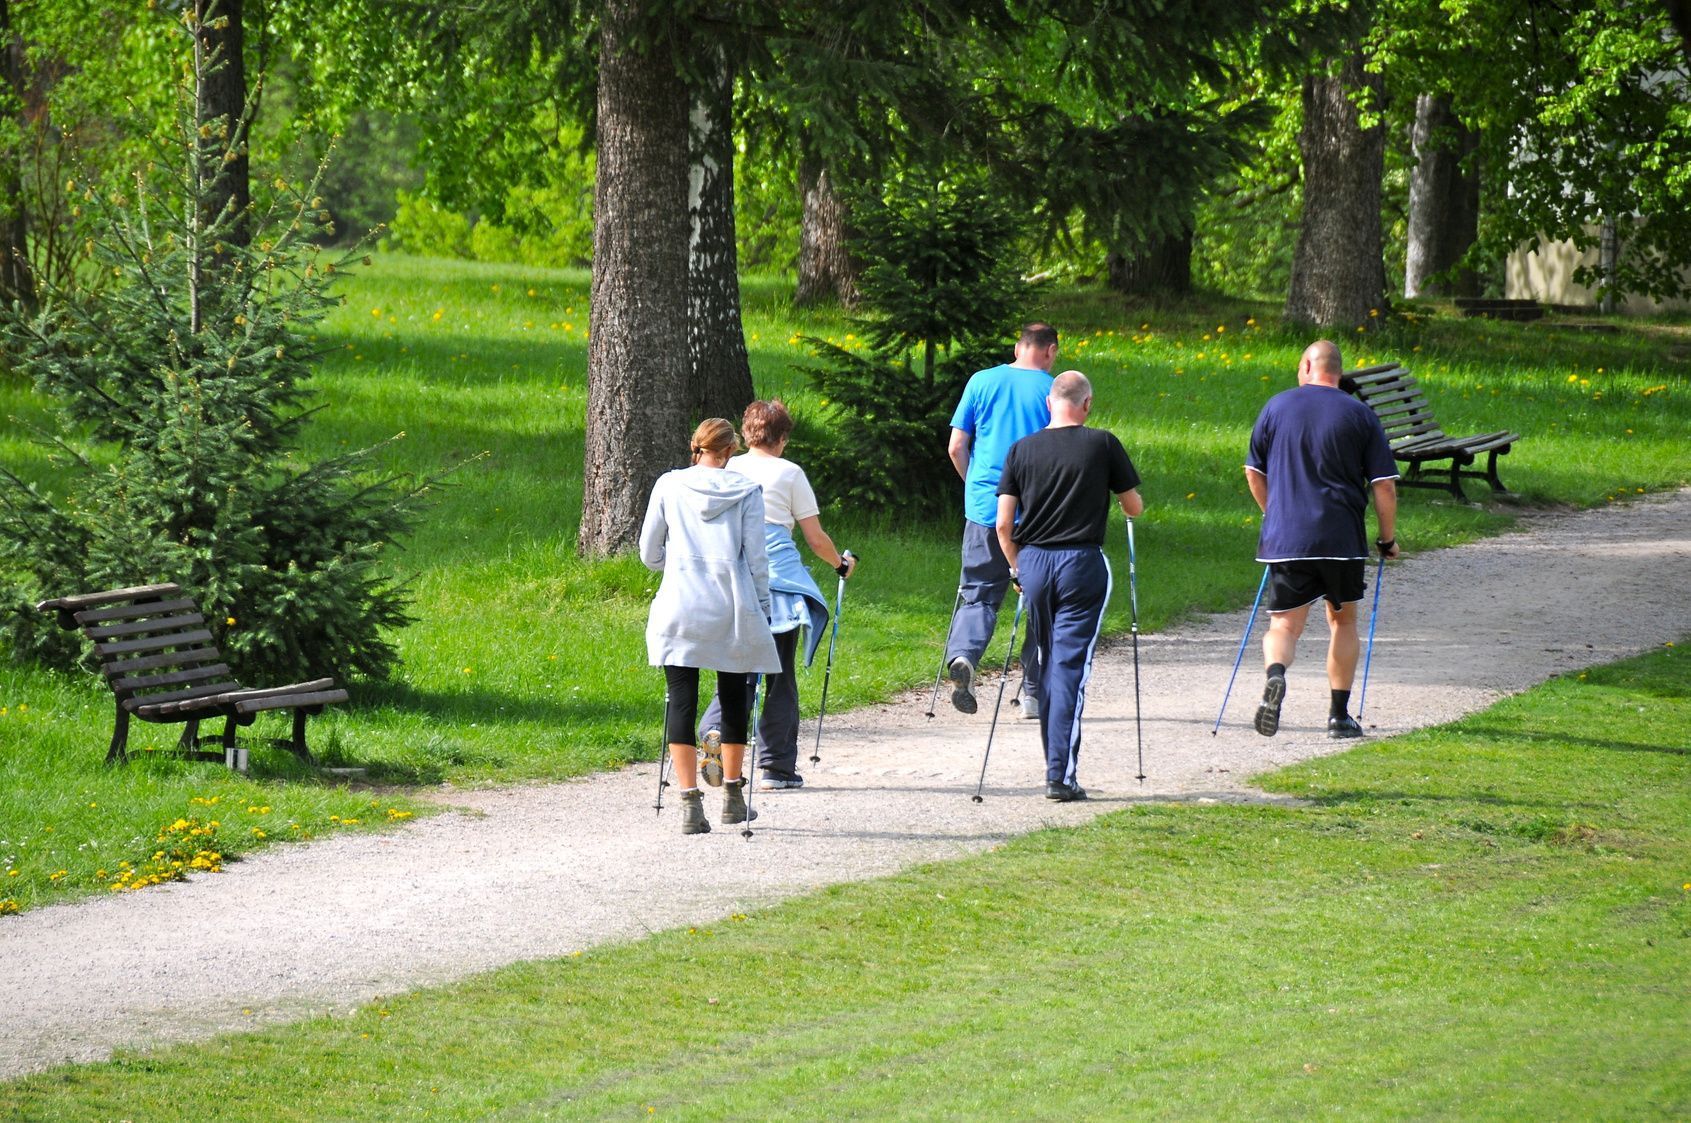 Ein beliebter Freizeitsport bei Jung und Alt, ist Nordic Walking. Kalorienverbrauch, Muskelaufbau und Bewegung an der frischen Luft sprechen für sich.